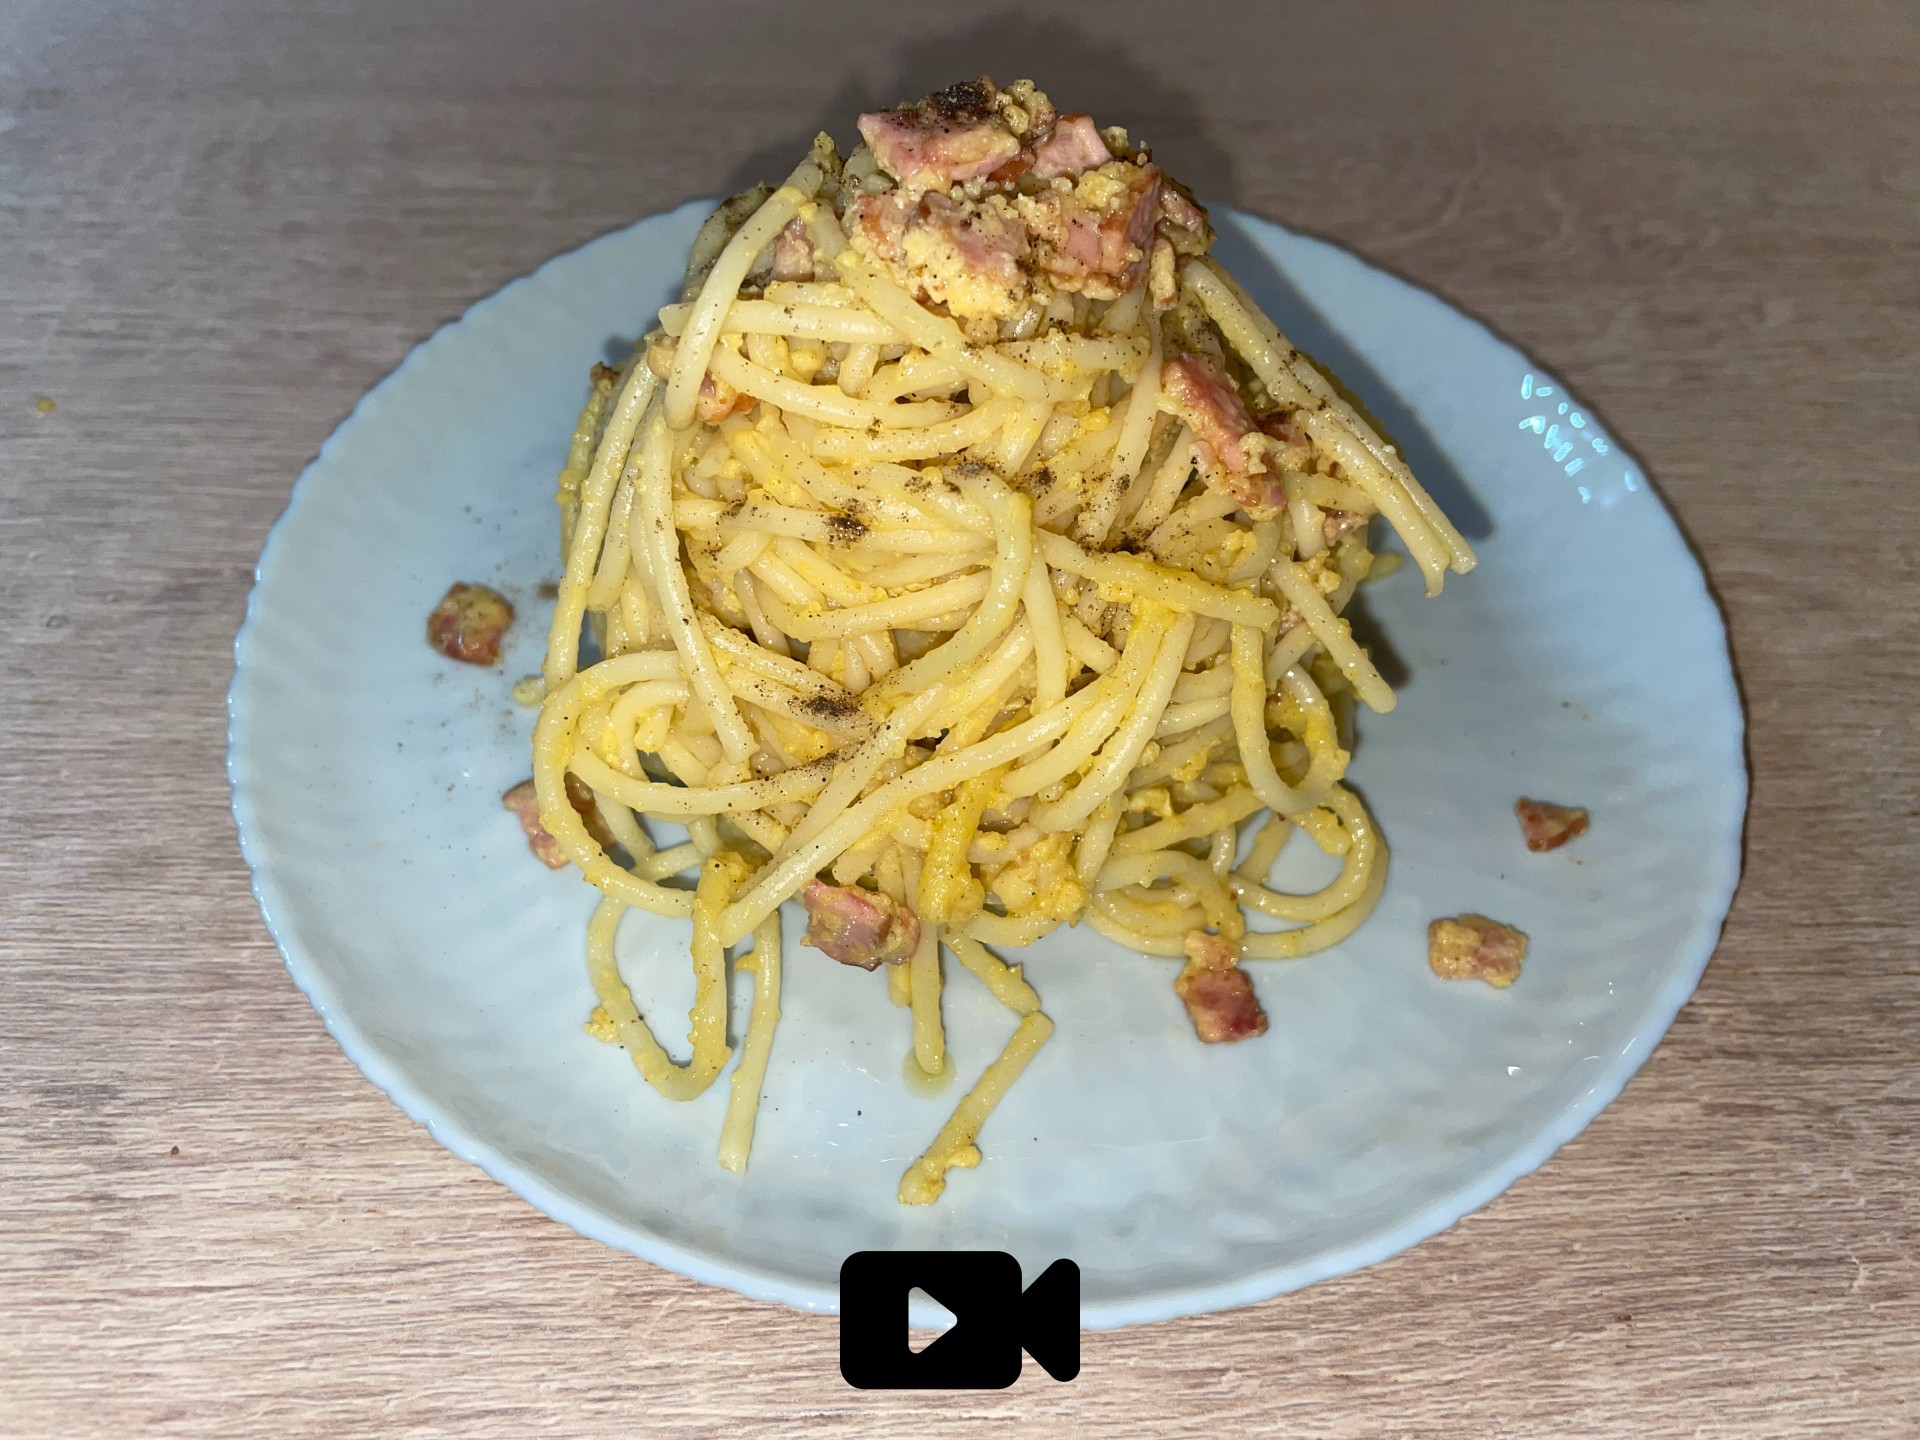 Συνταγή για αυθεντική Ιταλική καρμπονάρα. Εύκολη, γρήγορη και πεντανόστιμη. 